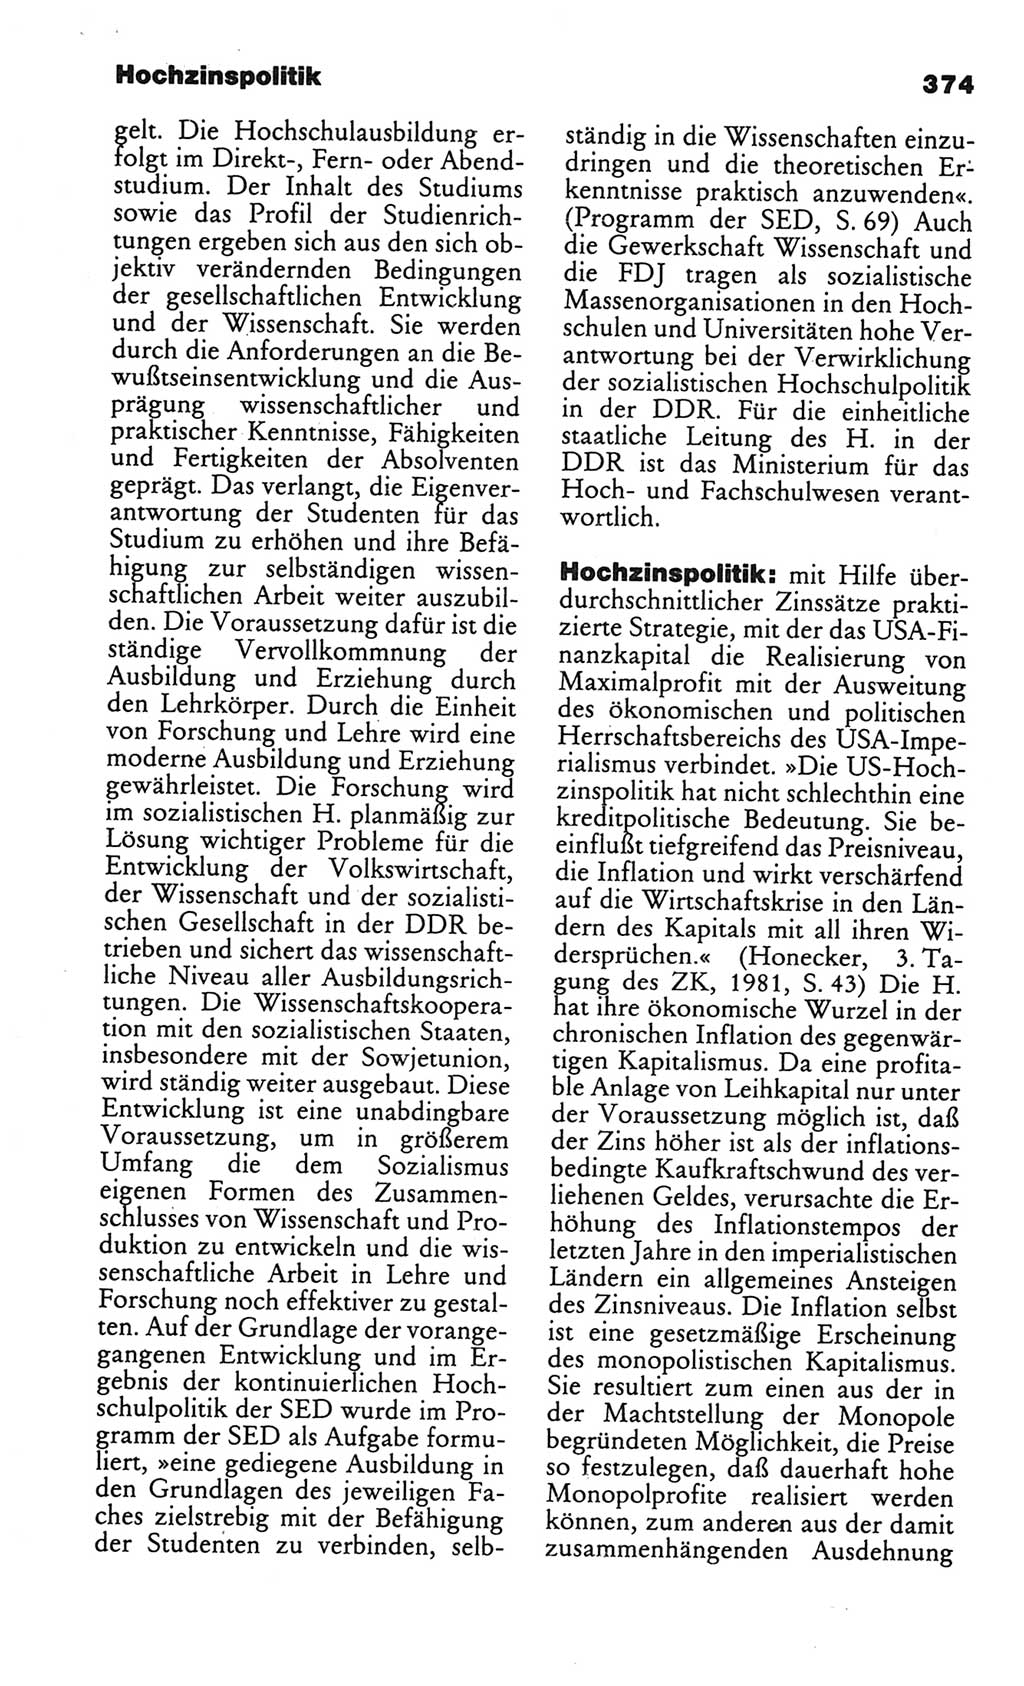 Kleines politisches Wörterbuch [Deutsche Demokratische Republik (DDR)] 1986, Seite 374 (Kl. pol. Wb. DDR 1986, S. 374)